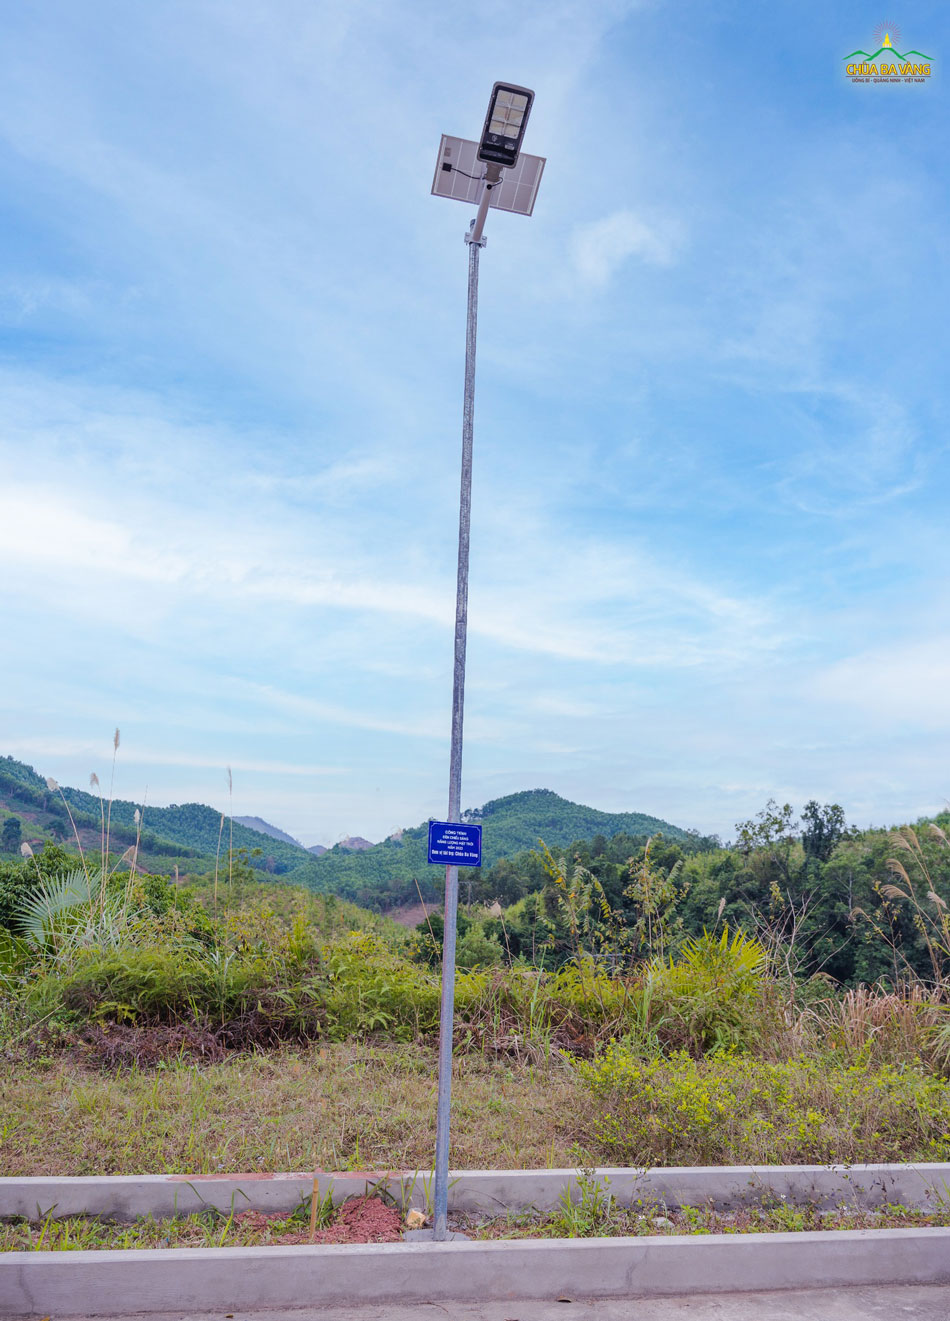 Gần 100 cột đèn hoạt động bằng năng lượng mặt trời, được phân bố rải rác trên nhiều đường đi xã Thanh Sơn, huyện Ba Chẽ, tỉnh Quảng Ninh